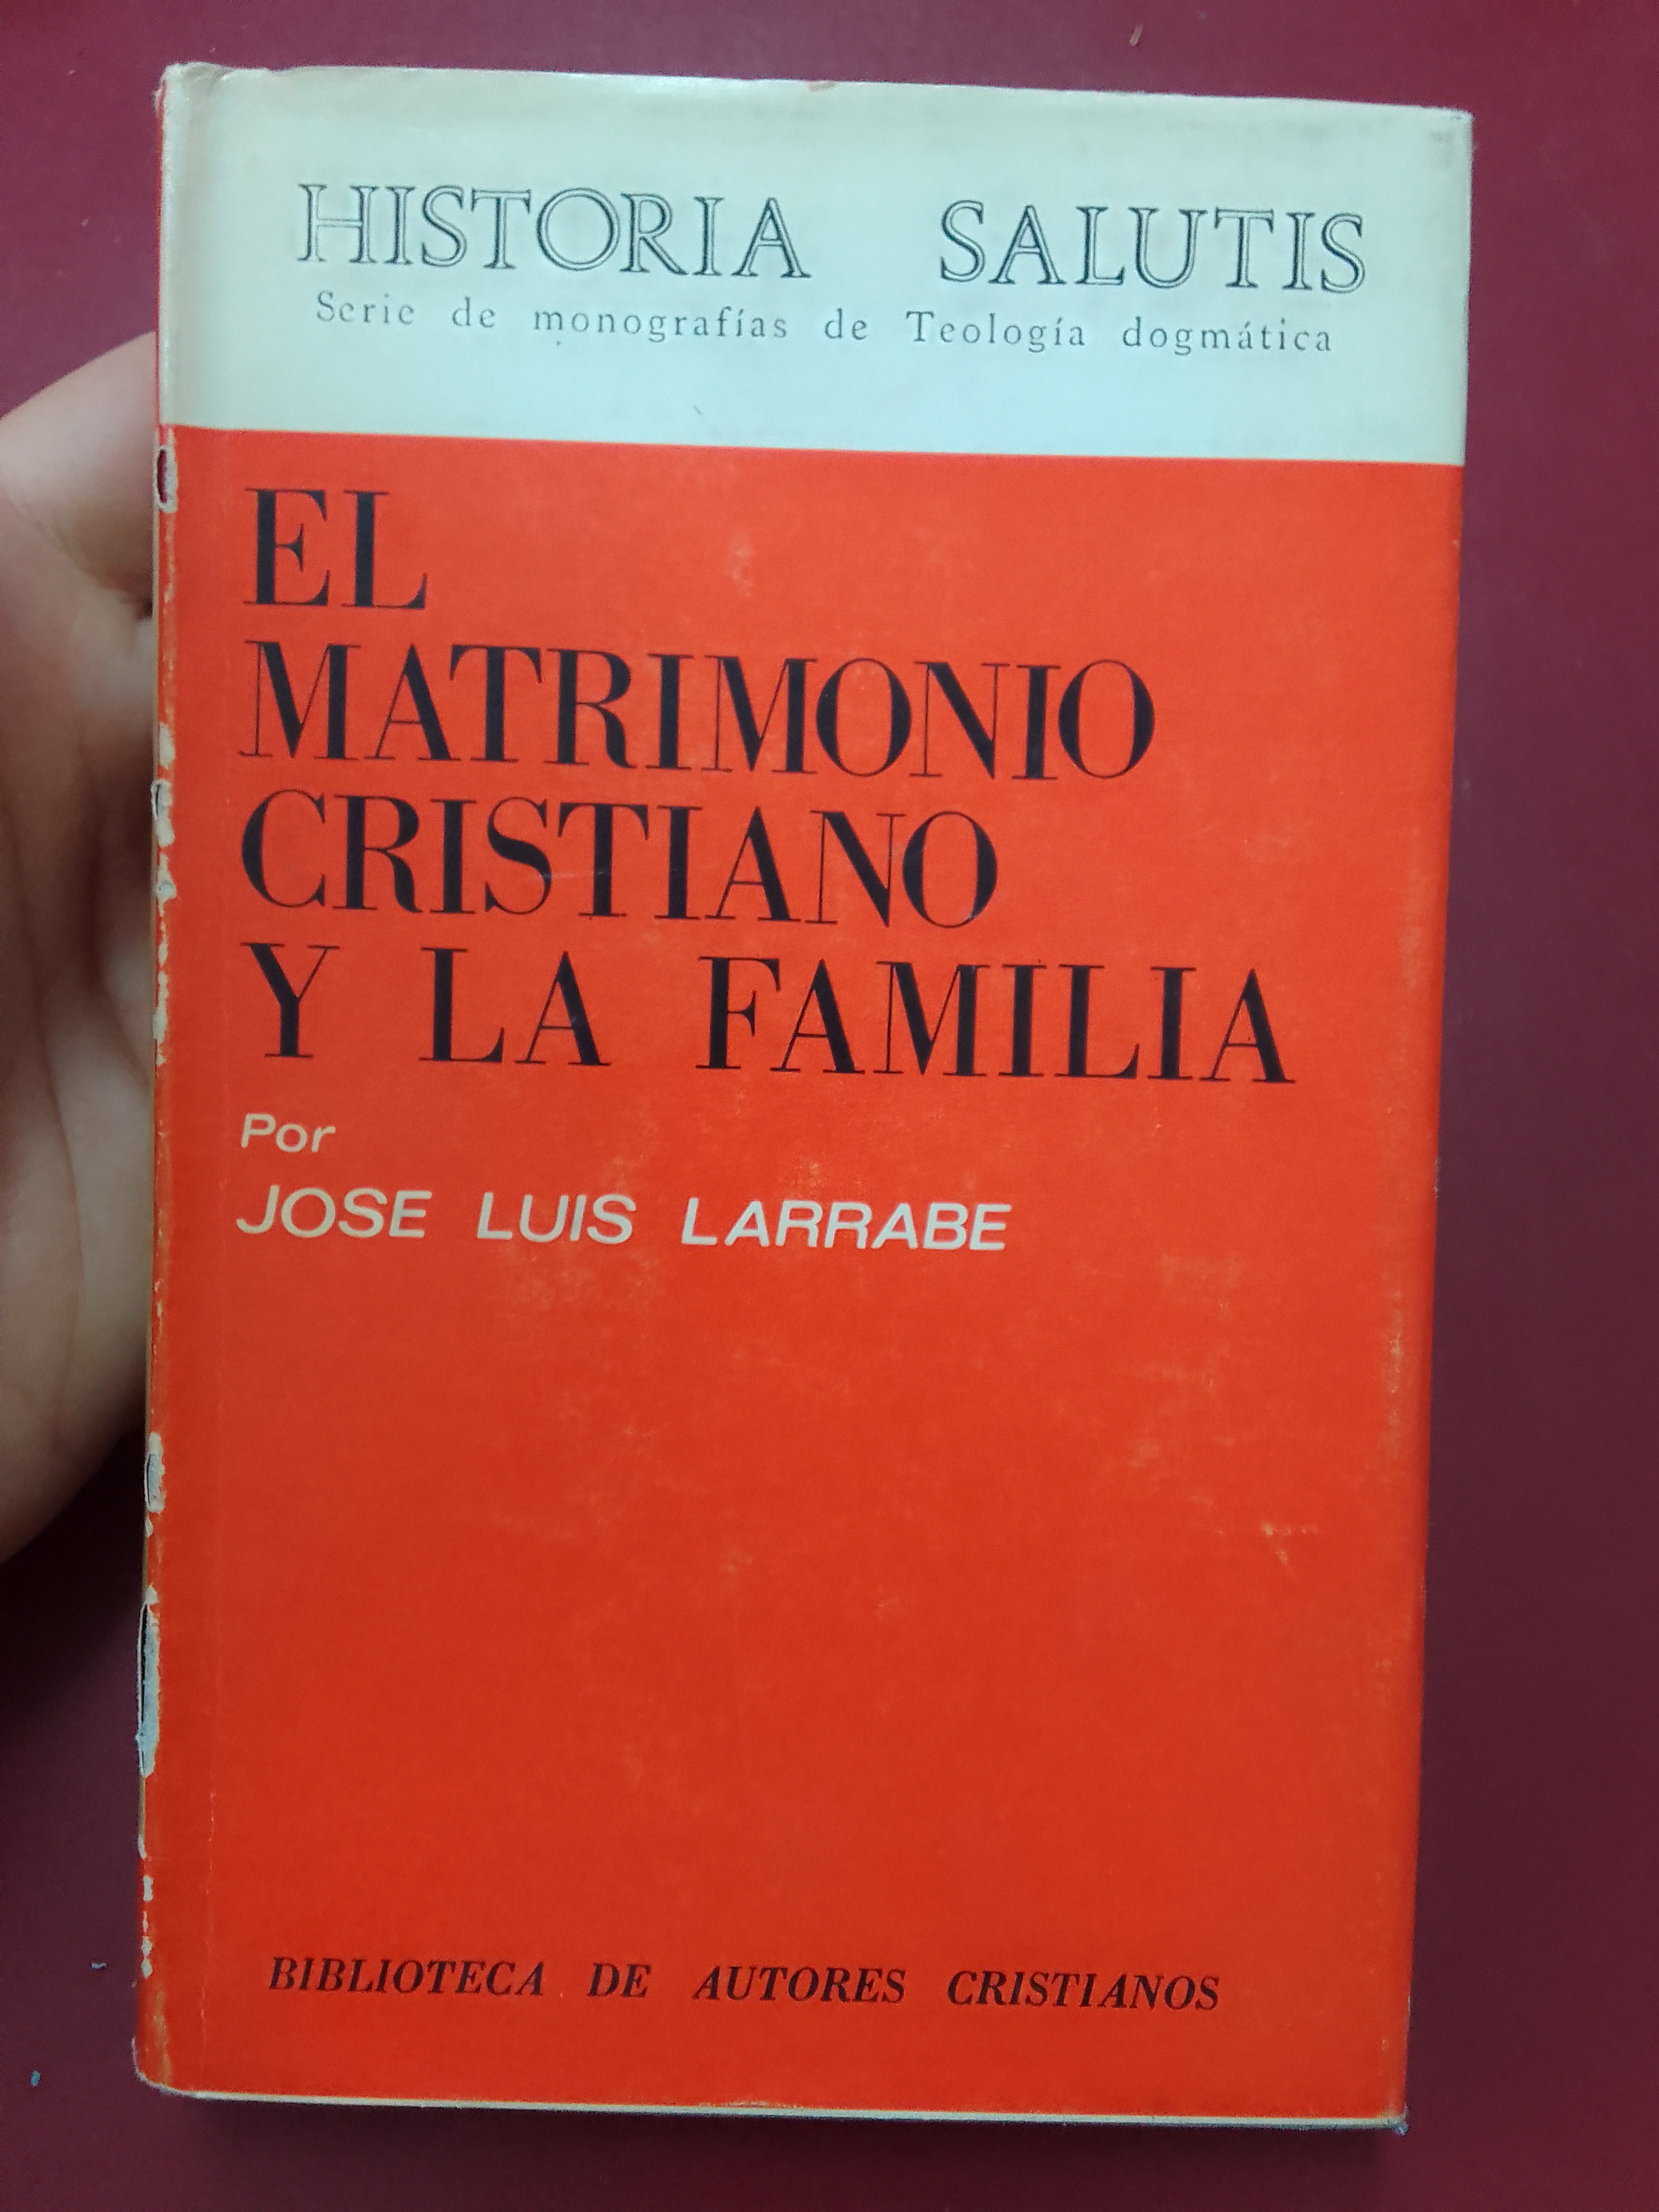 El matrimonio cristiano y la familia - José Luis Larrabe